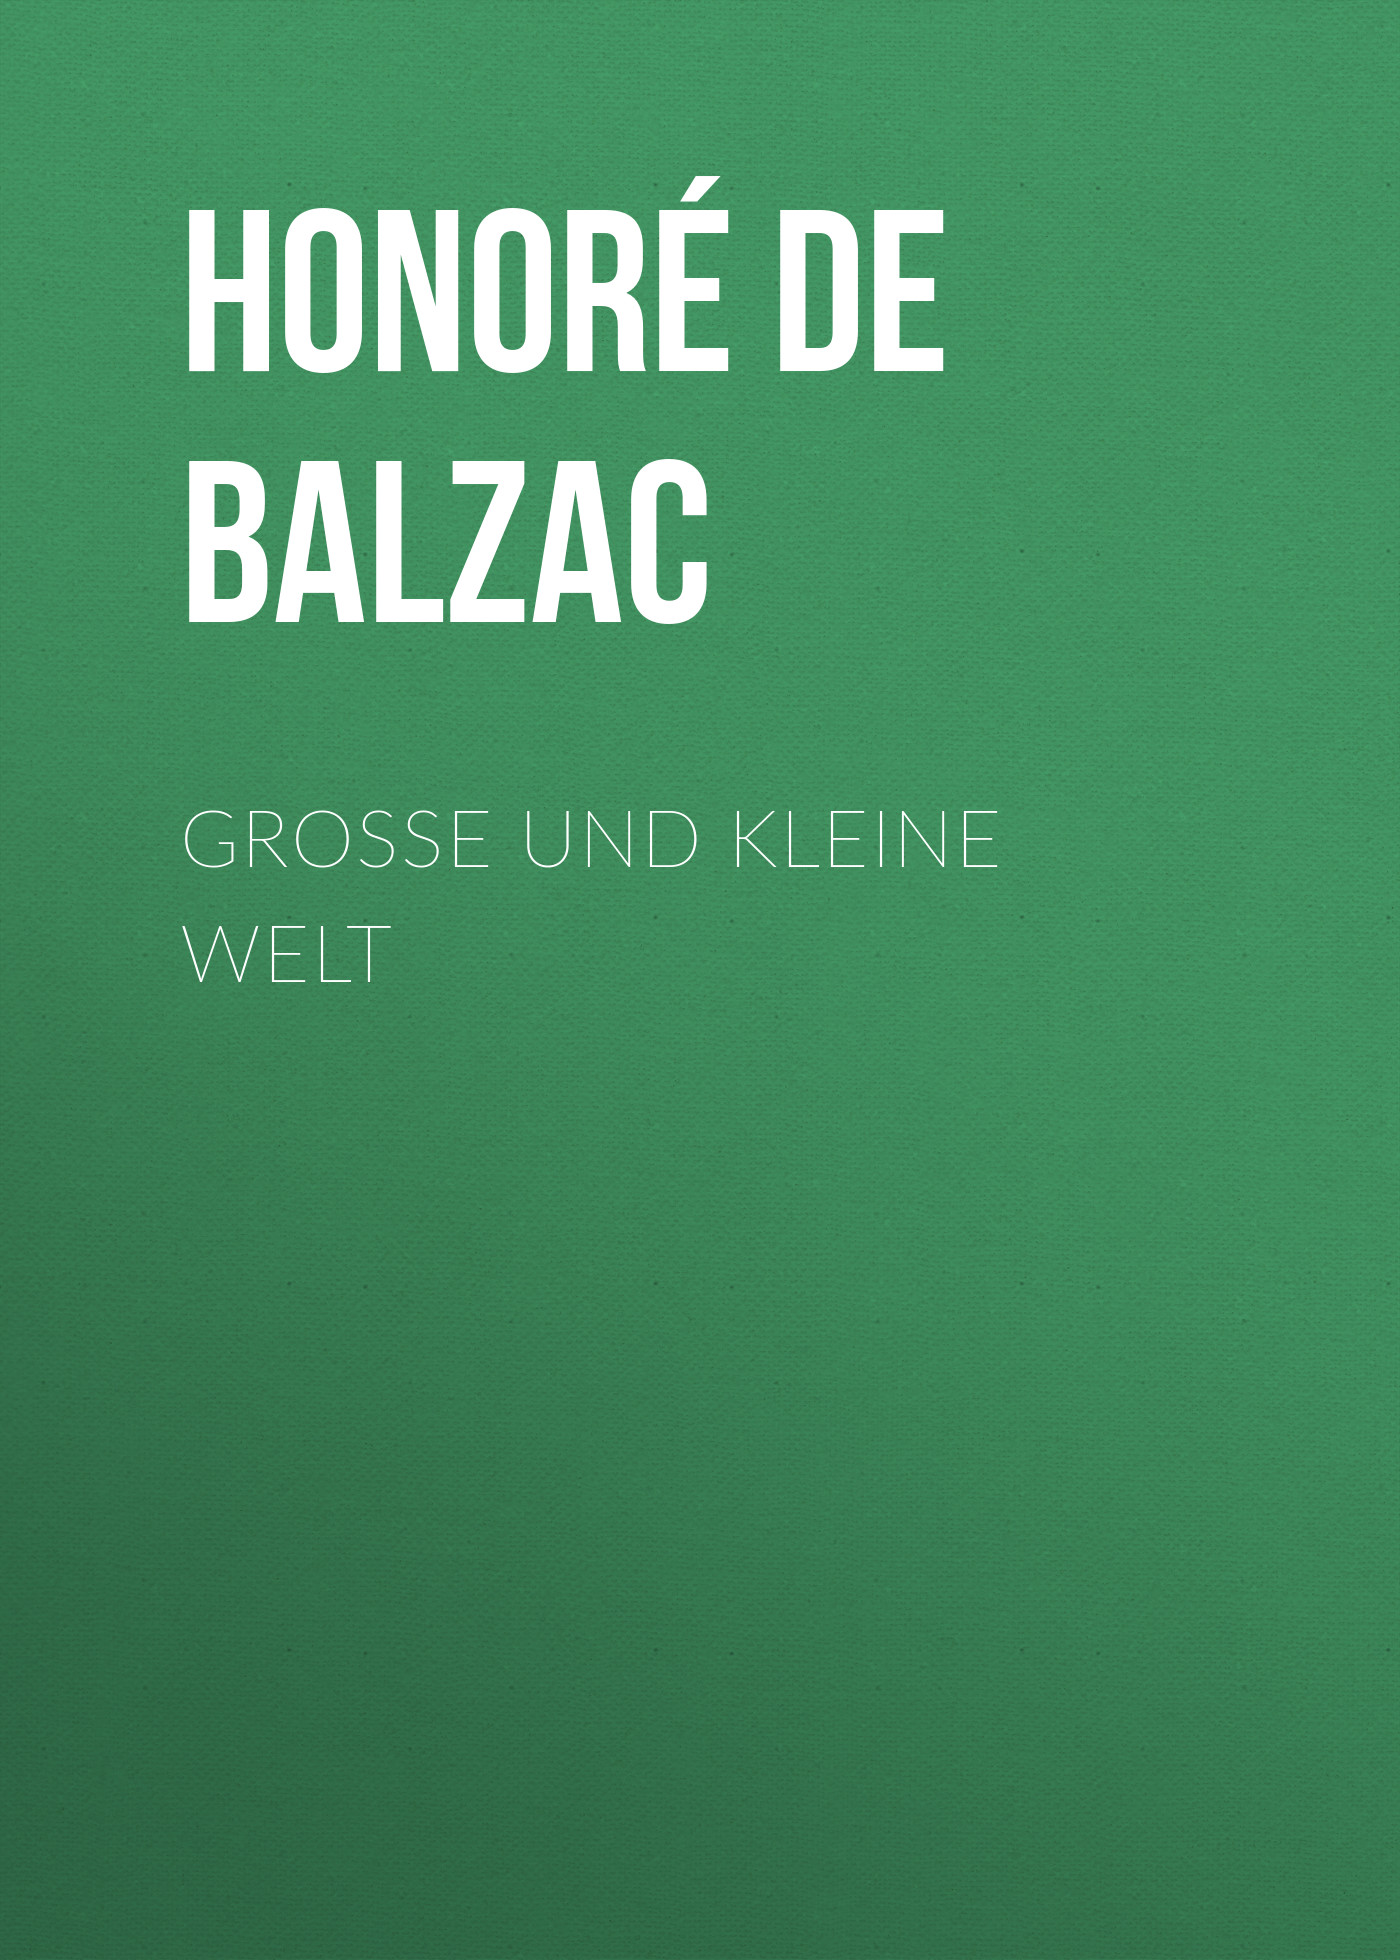 Книга Große und kleine Welt  из серии , созданная Honoré Balzac, может относится к жанру Литература 19 века, Зарубежная старинная литература, Зарубежная классика. Стоимость электронной книги Große und kleine Welt  с идентификатором 25021147 составляет 0 руб.